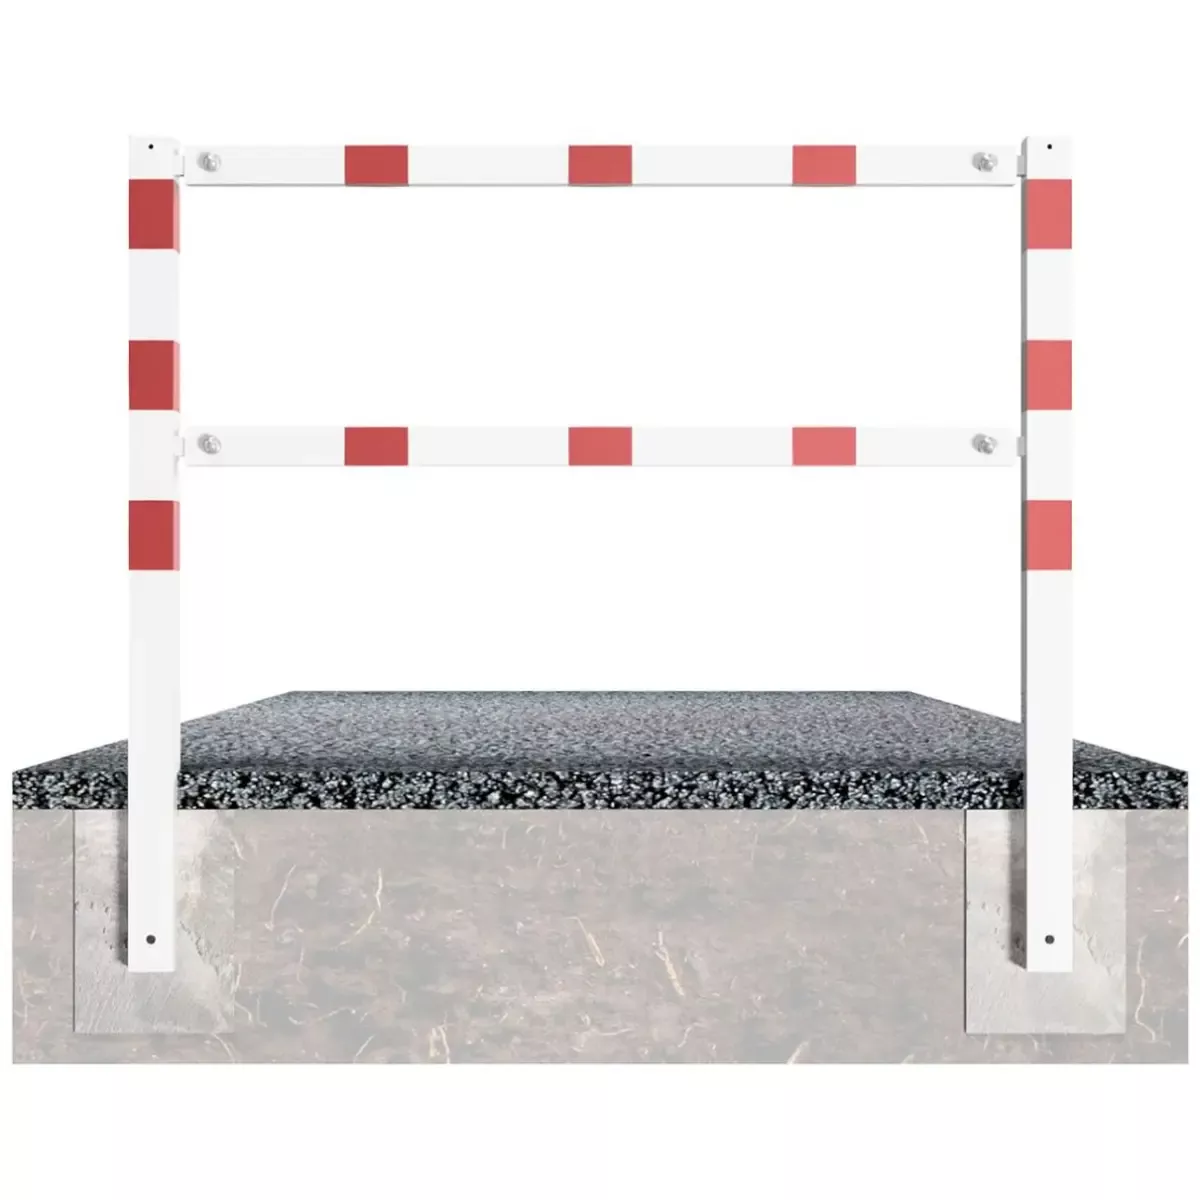 Wegesperren aus Vierkantrohr 70x70 mm mit Knieholm, Br.2000xH.900 mm, weiß - rot, zusammenschraubbar